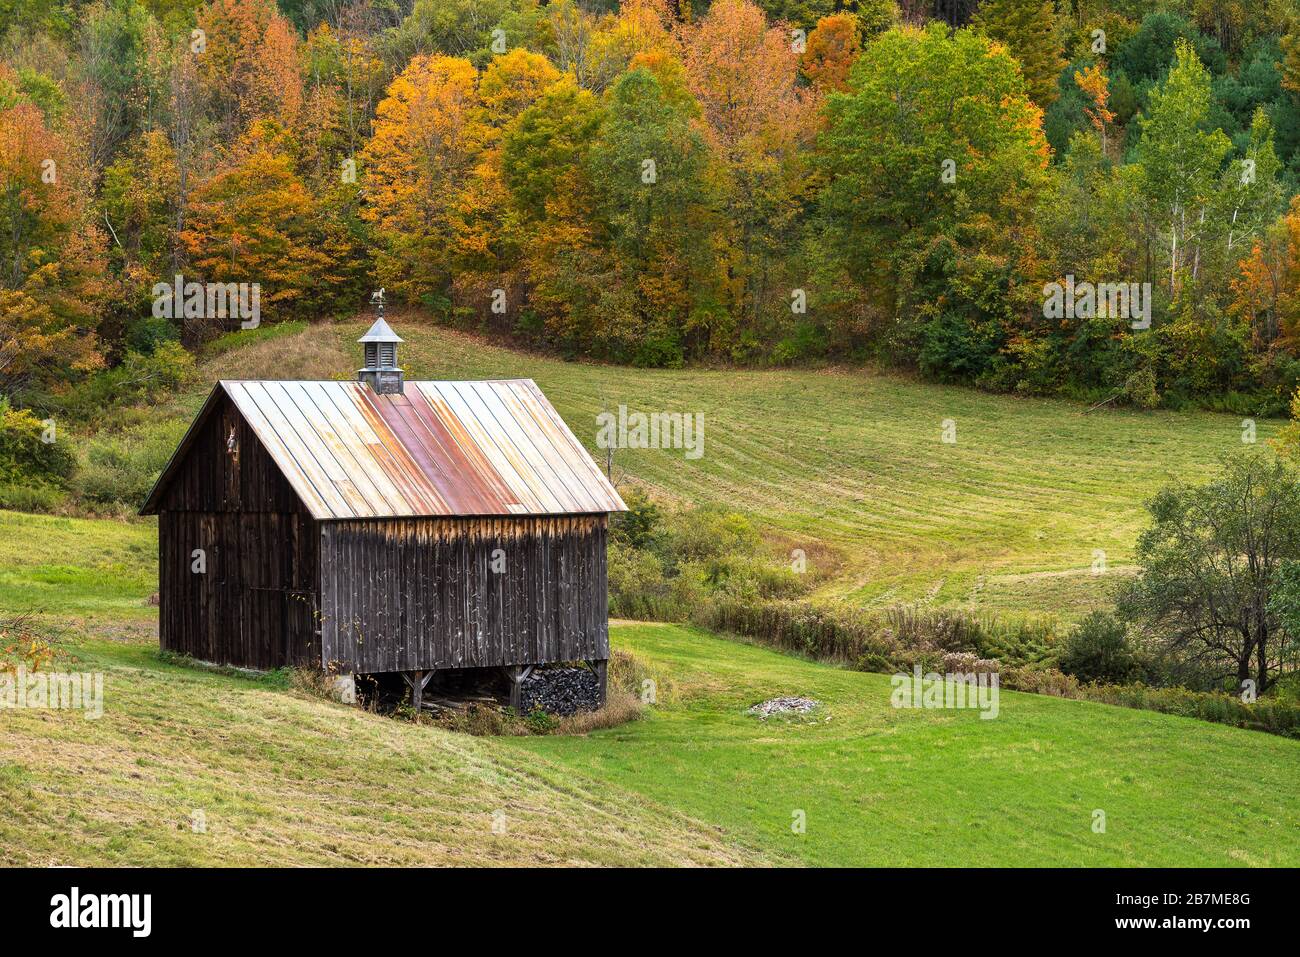 Holzhütte in einem von farbenfrohem Herbstwald überfluteten Medow in einer rollenden ländlichen Landschaft Stockfoto